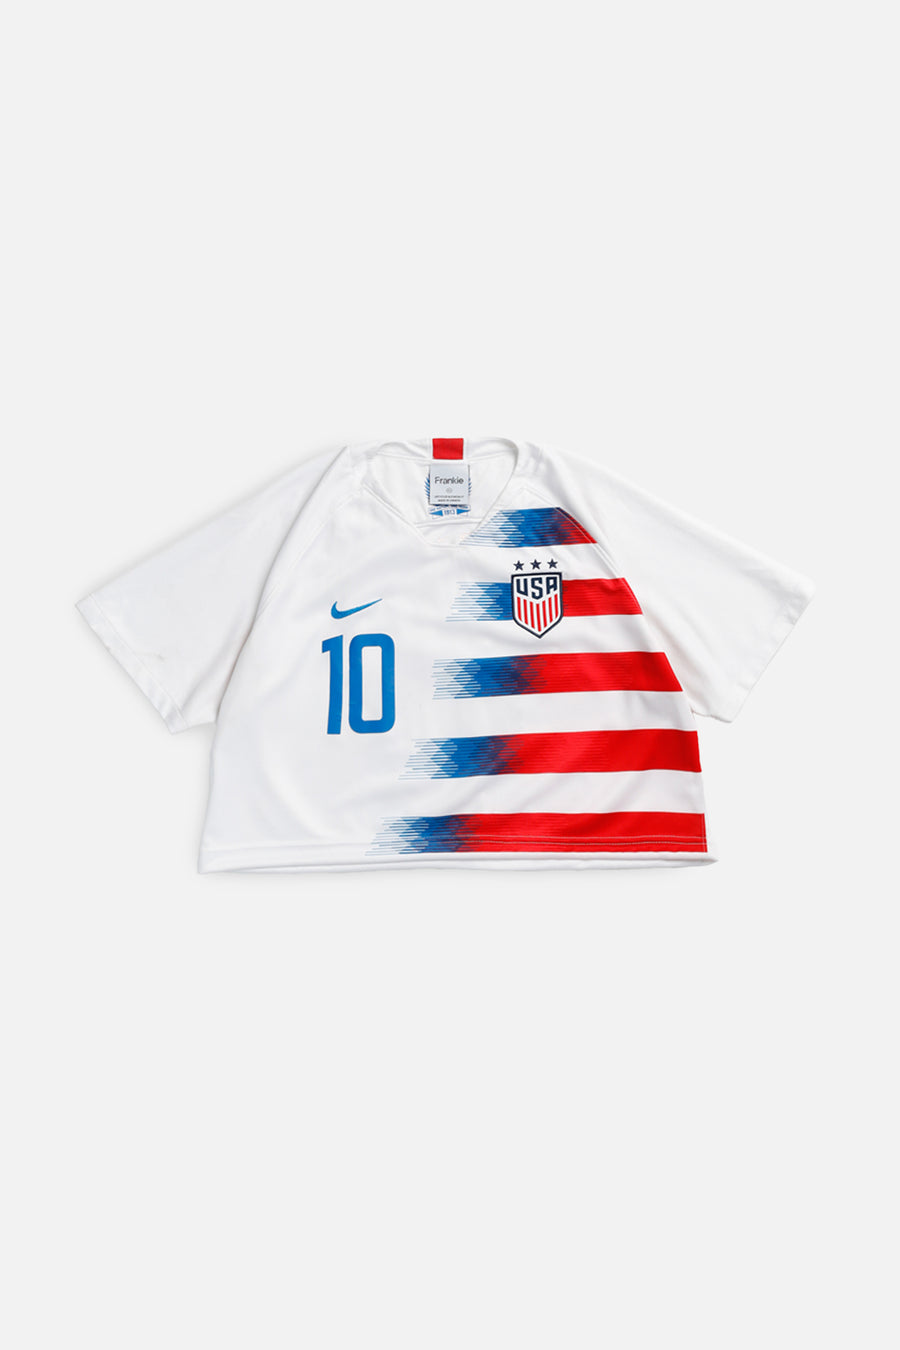 Rework Crop USA Soccer Jersey - XL